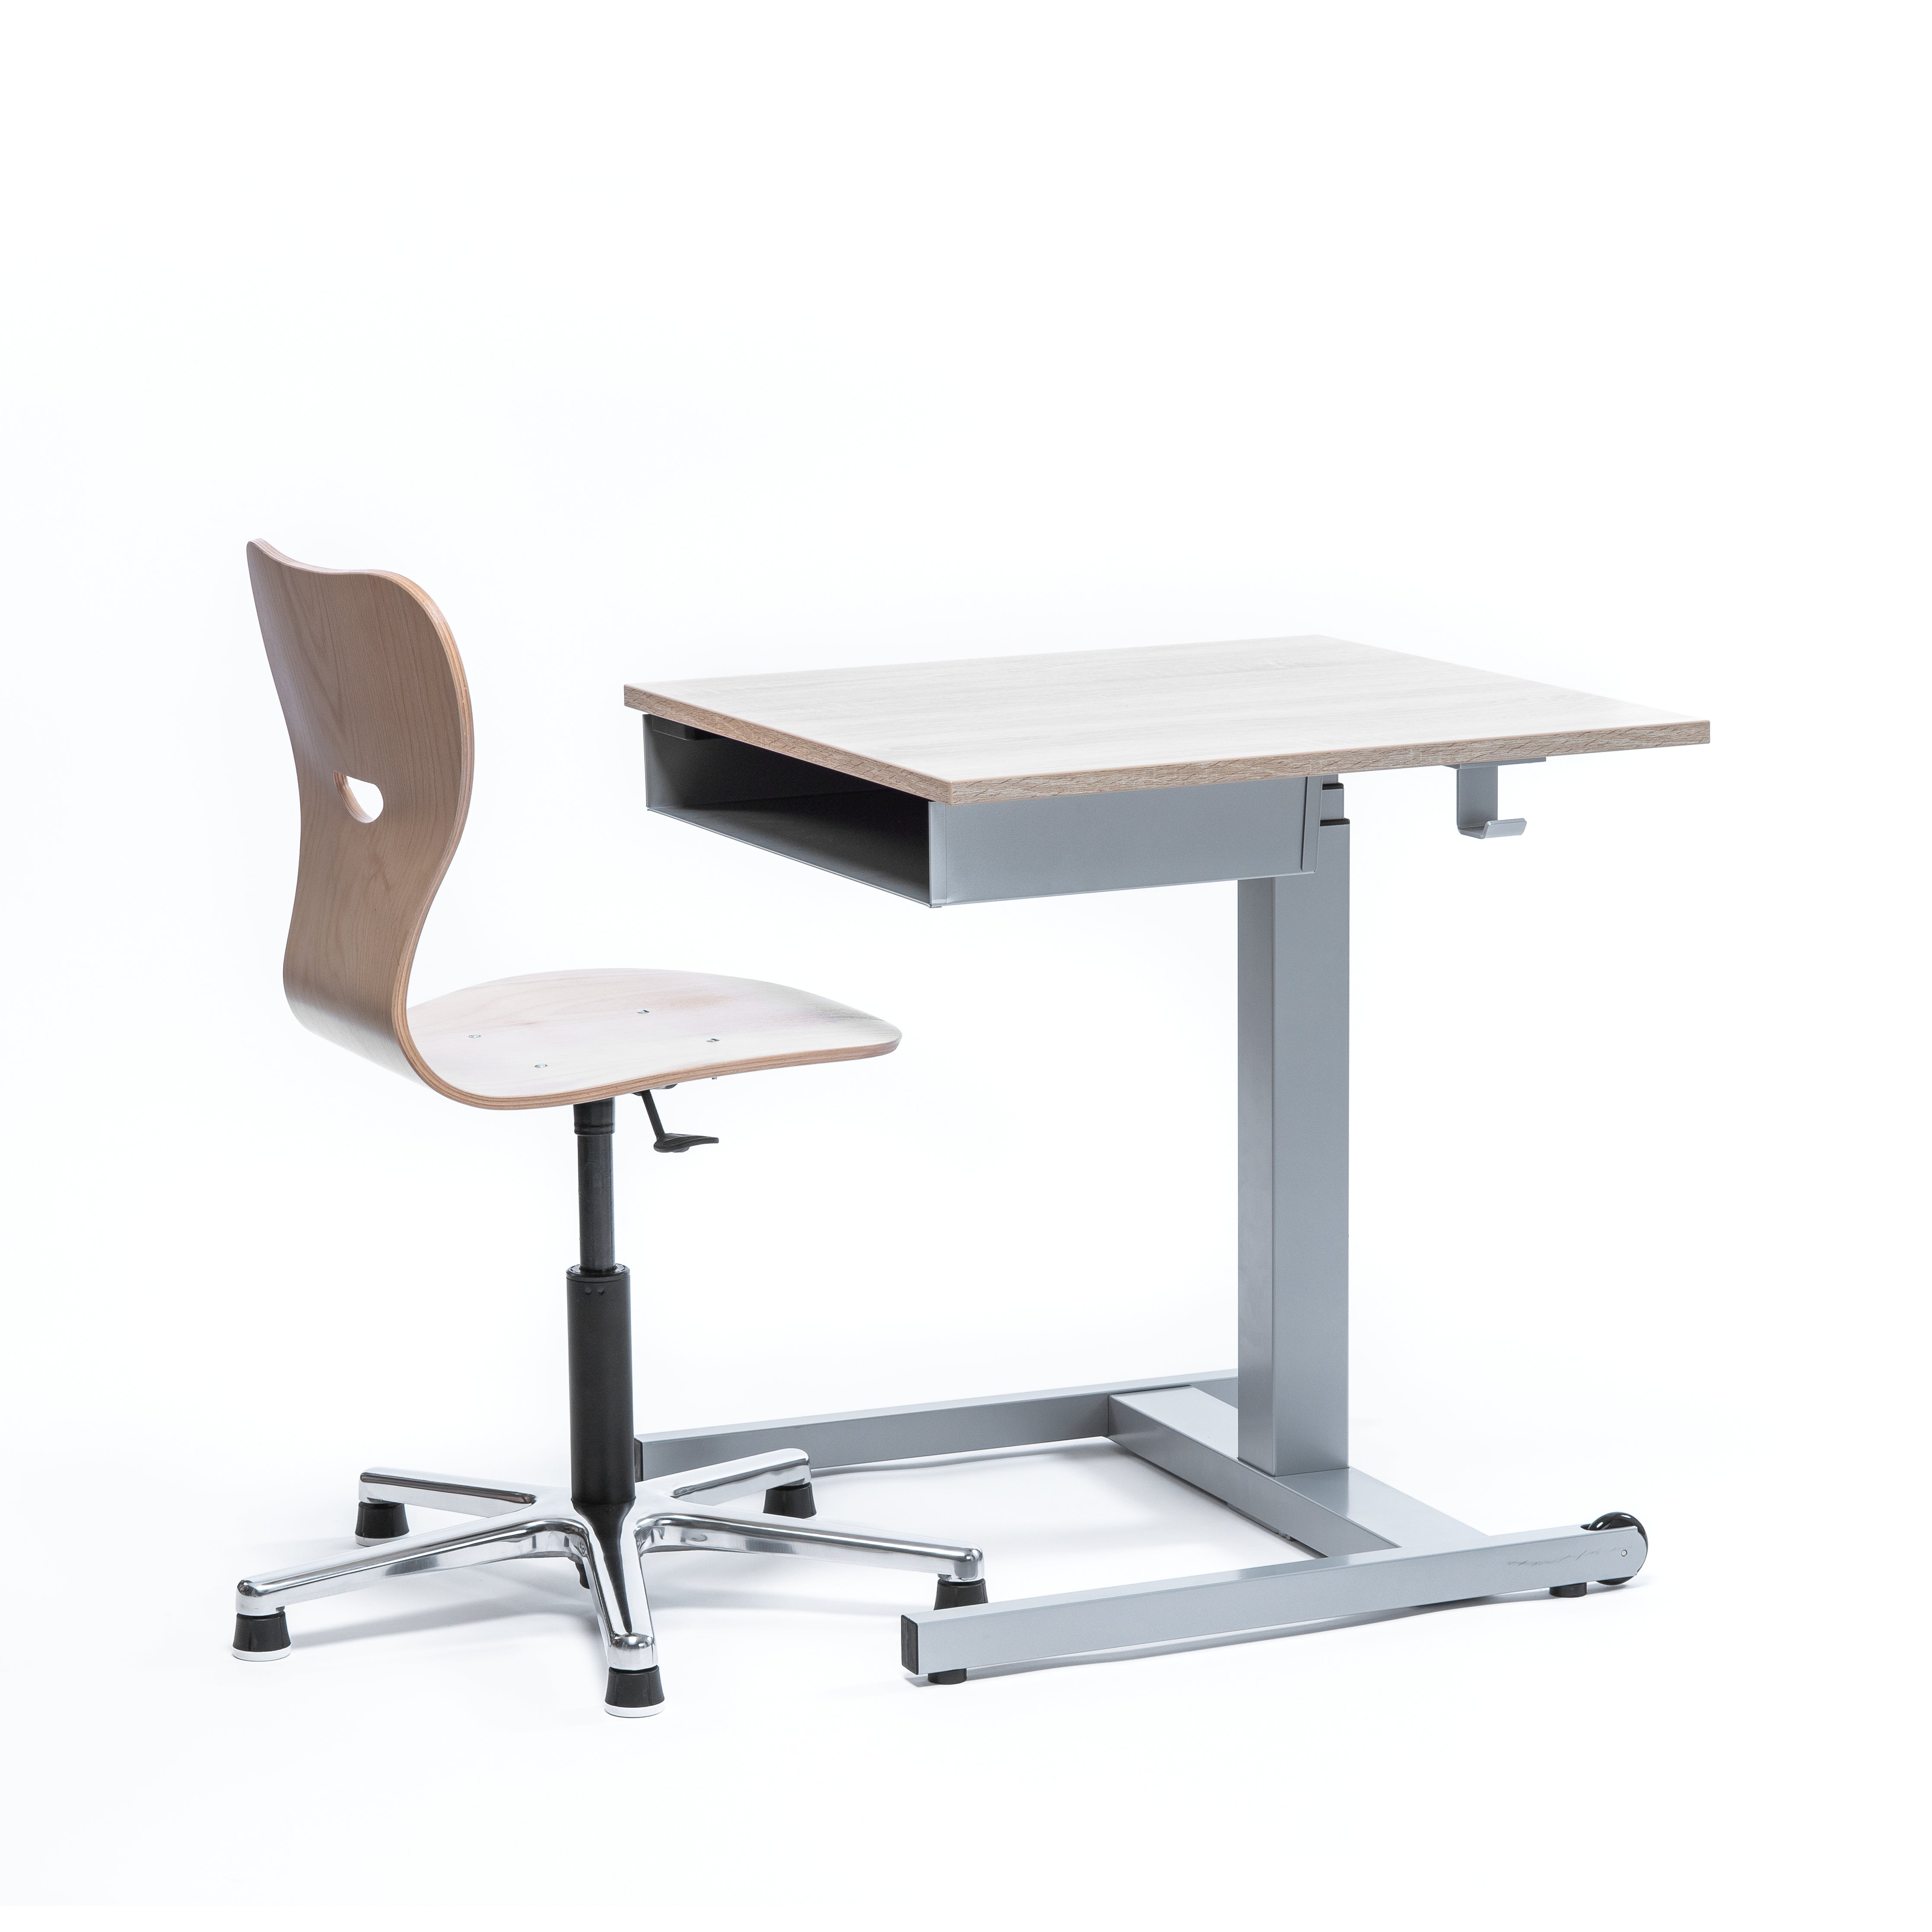 Schulstuhl robust aus Holz mit passendem Schultisch höhenverstellbar